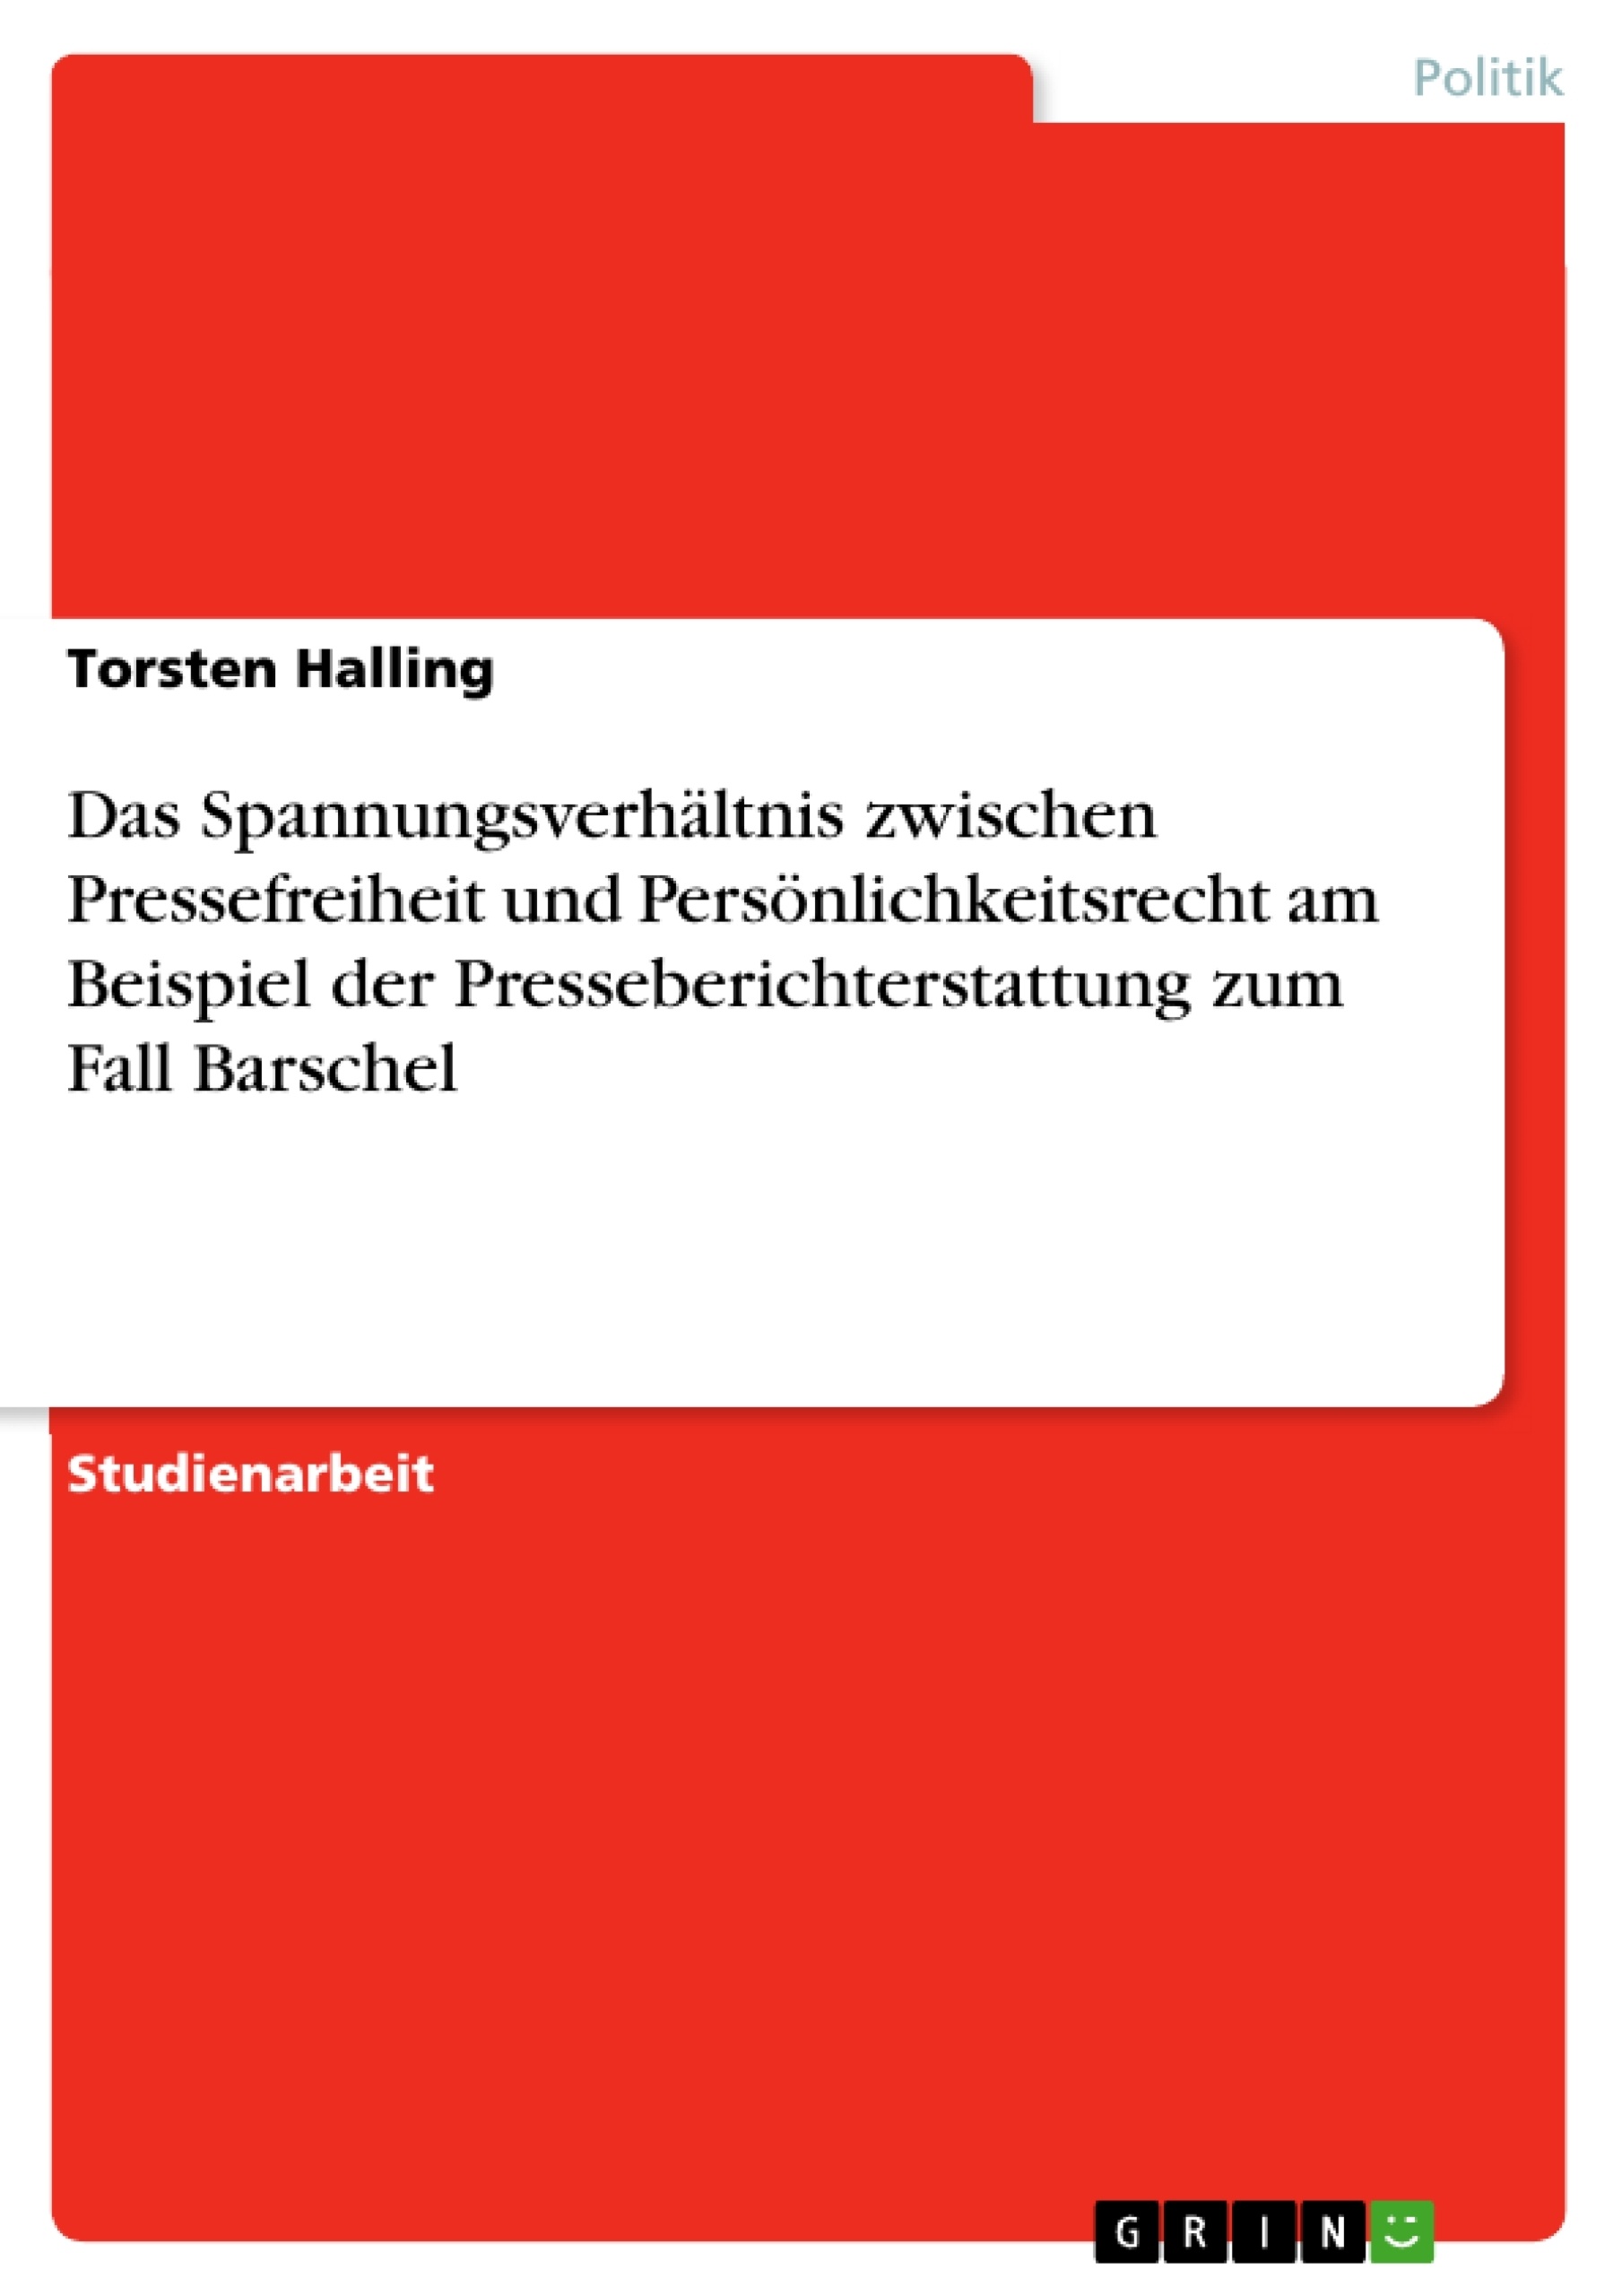 Title: Das Spannungsverhältnis zwischen Pressefreiheit und Persönlichkeitsrecht am Beispiel der Presseberichterstattung zum Fall Barschel